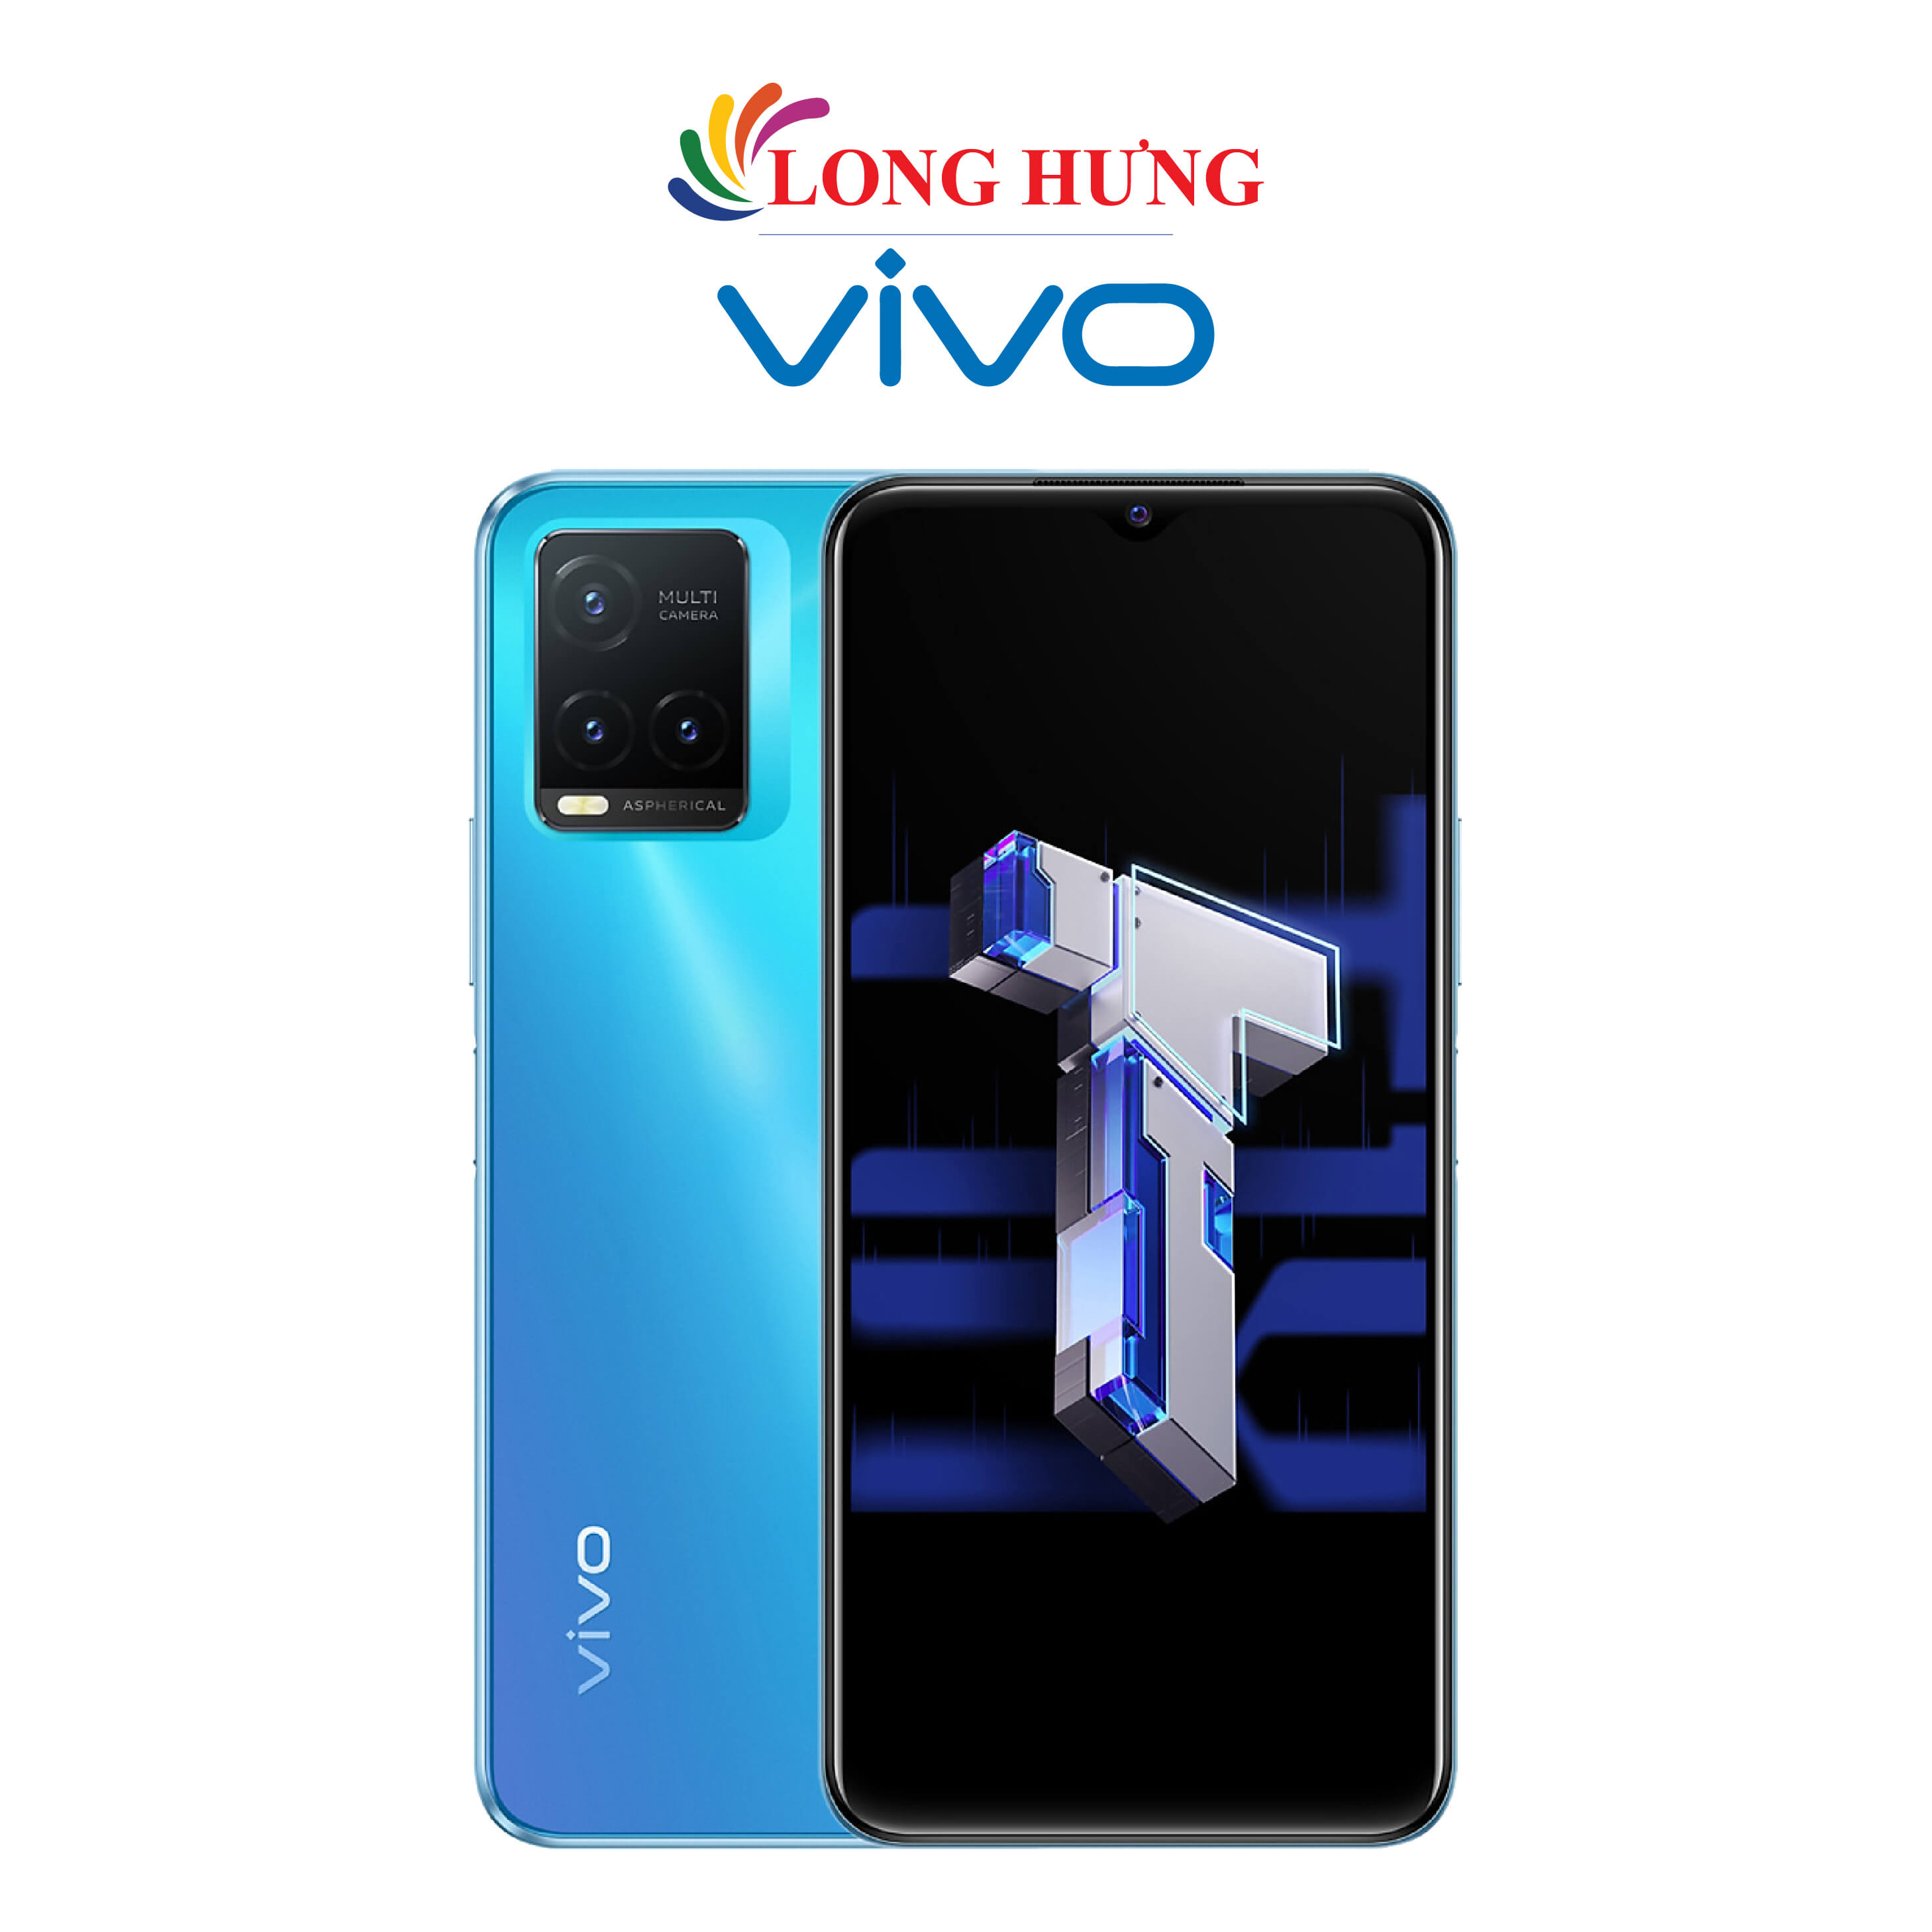 Điện thoại Vivo T1x (4GB/64GB) - Hàng chính hãng - Thiết kế đẹp mắt, hiệu năng mạnh mẽ, sạc nhanh 18W